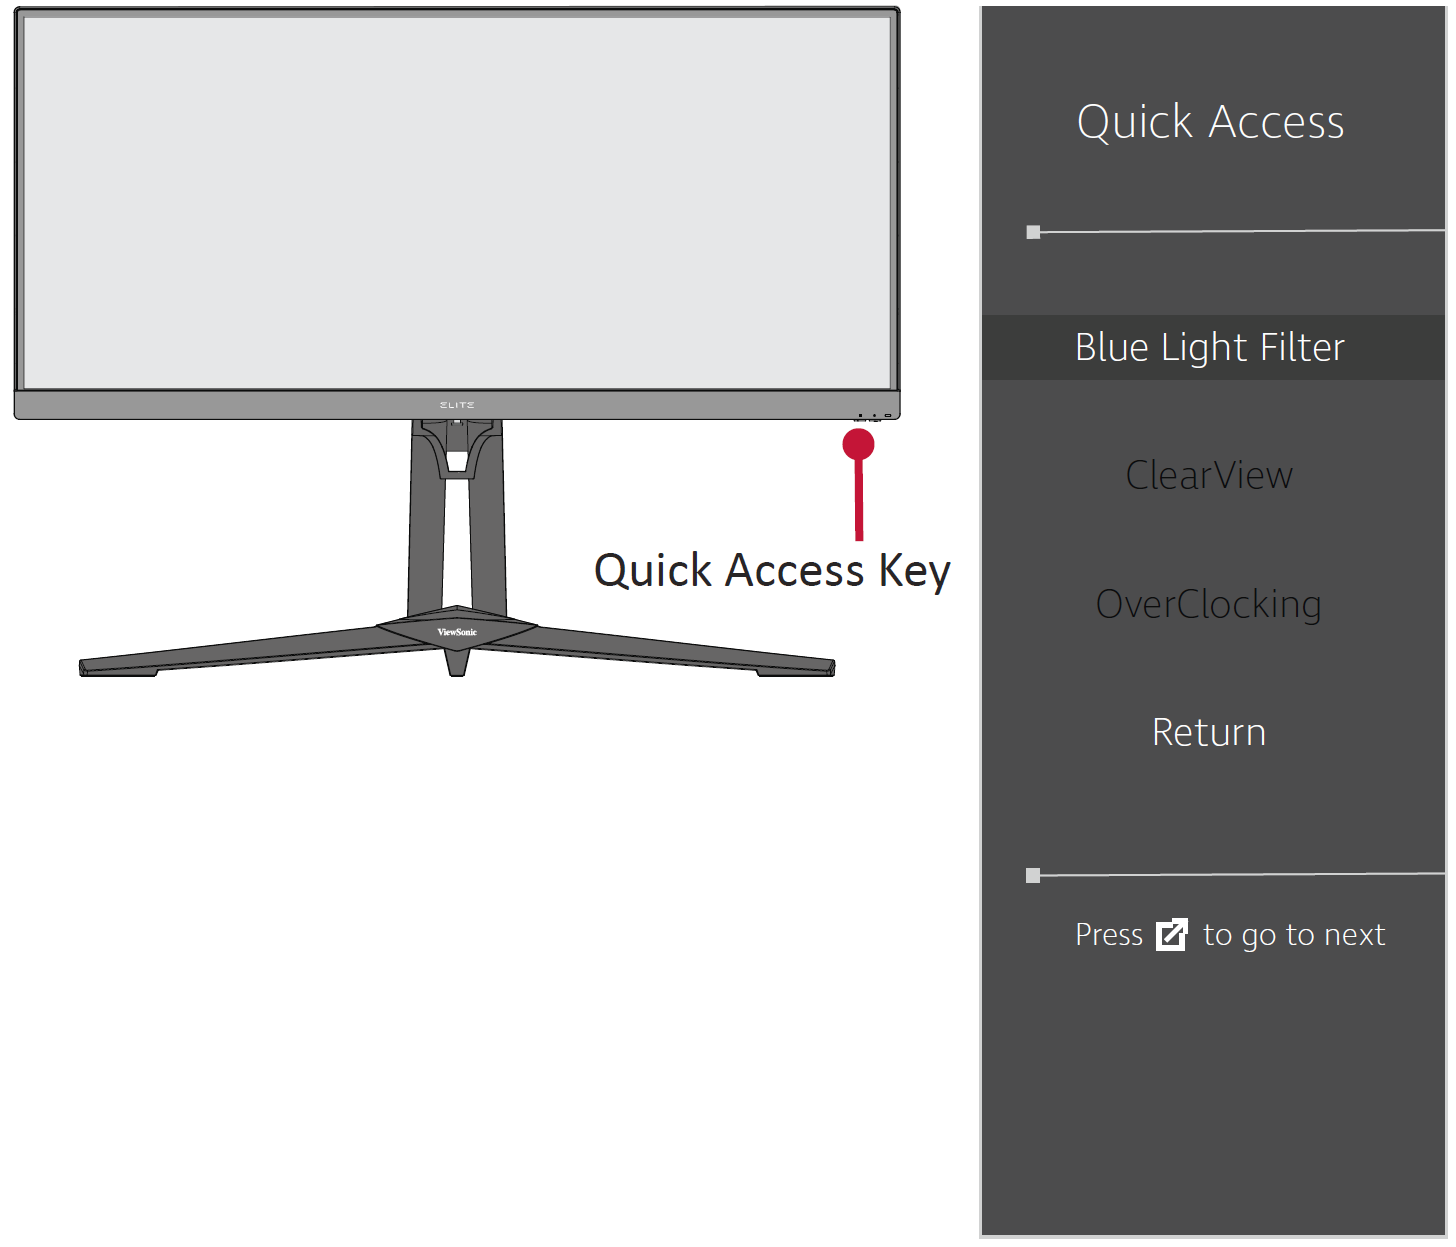 Quick Access Key